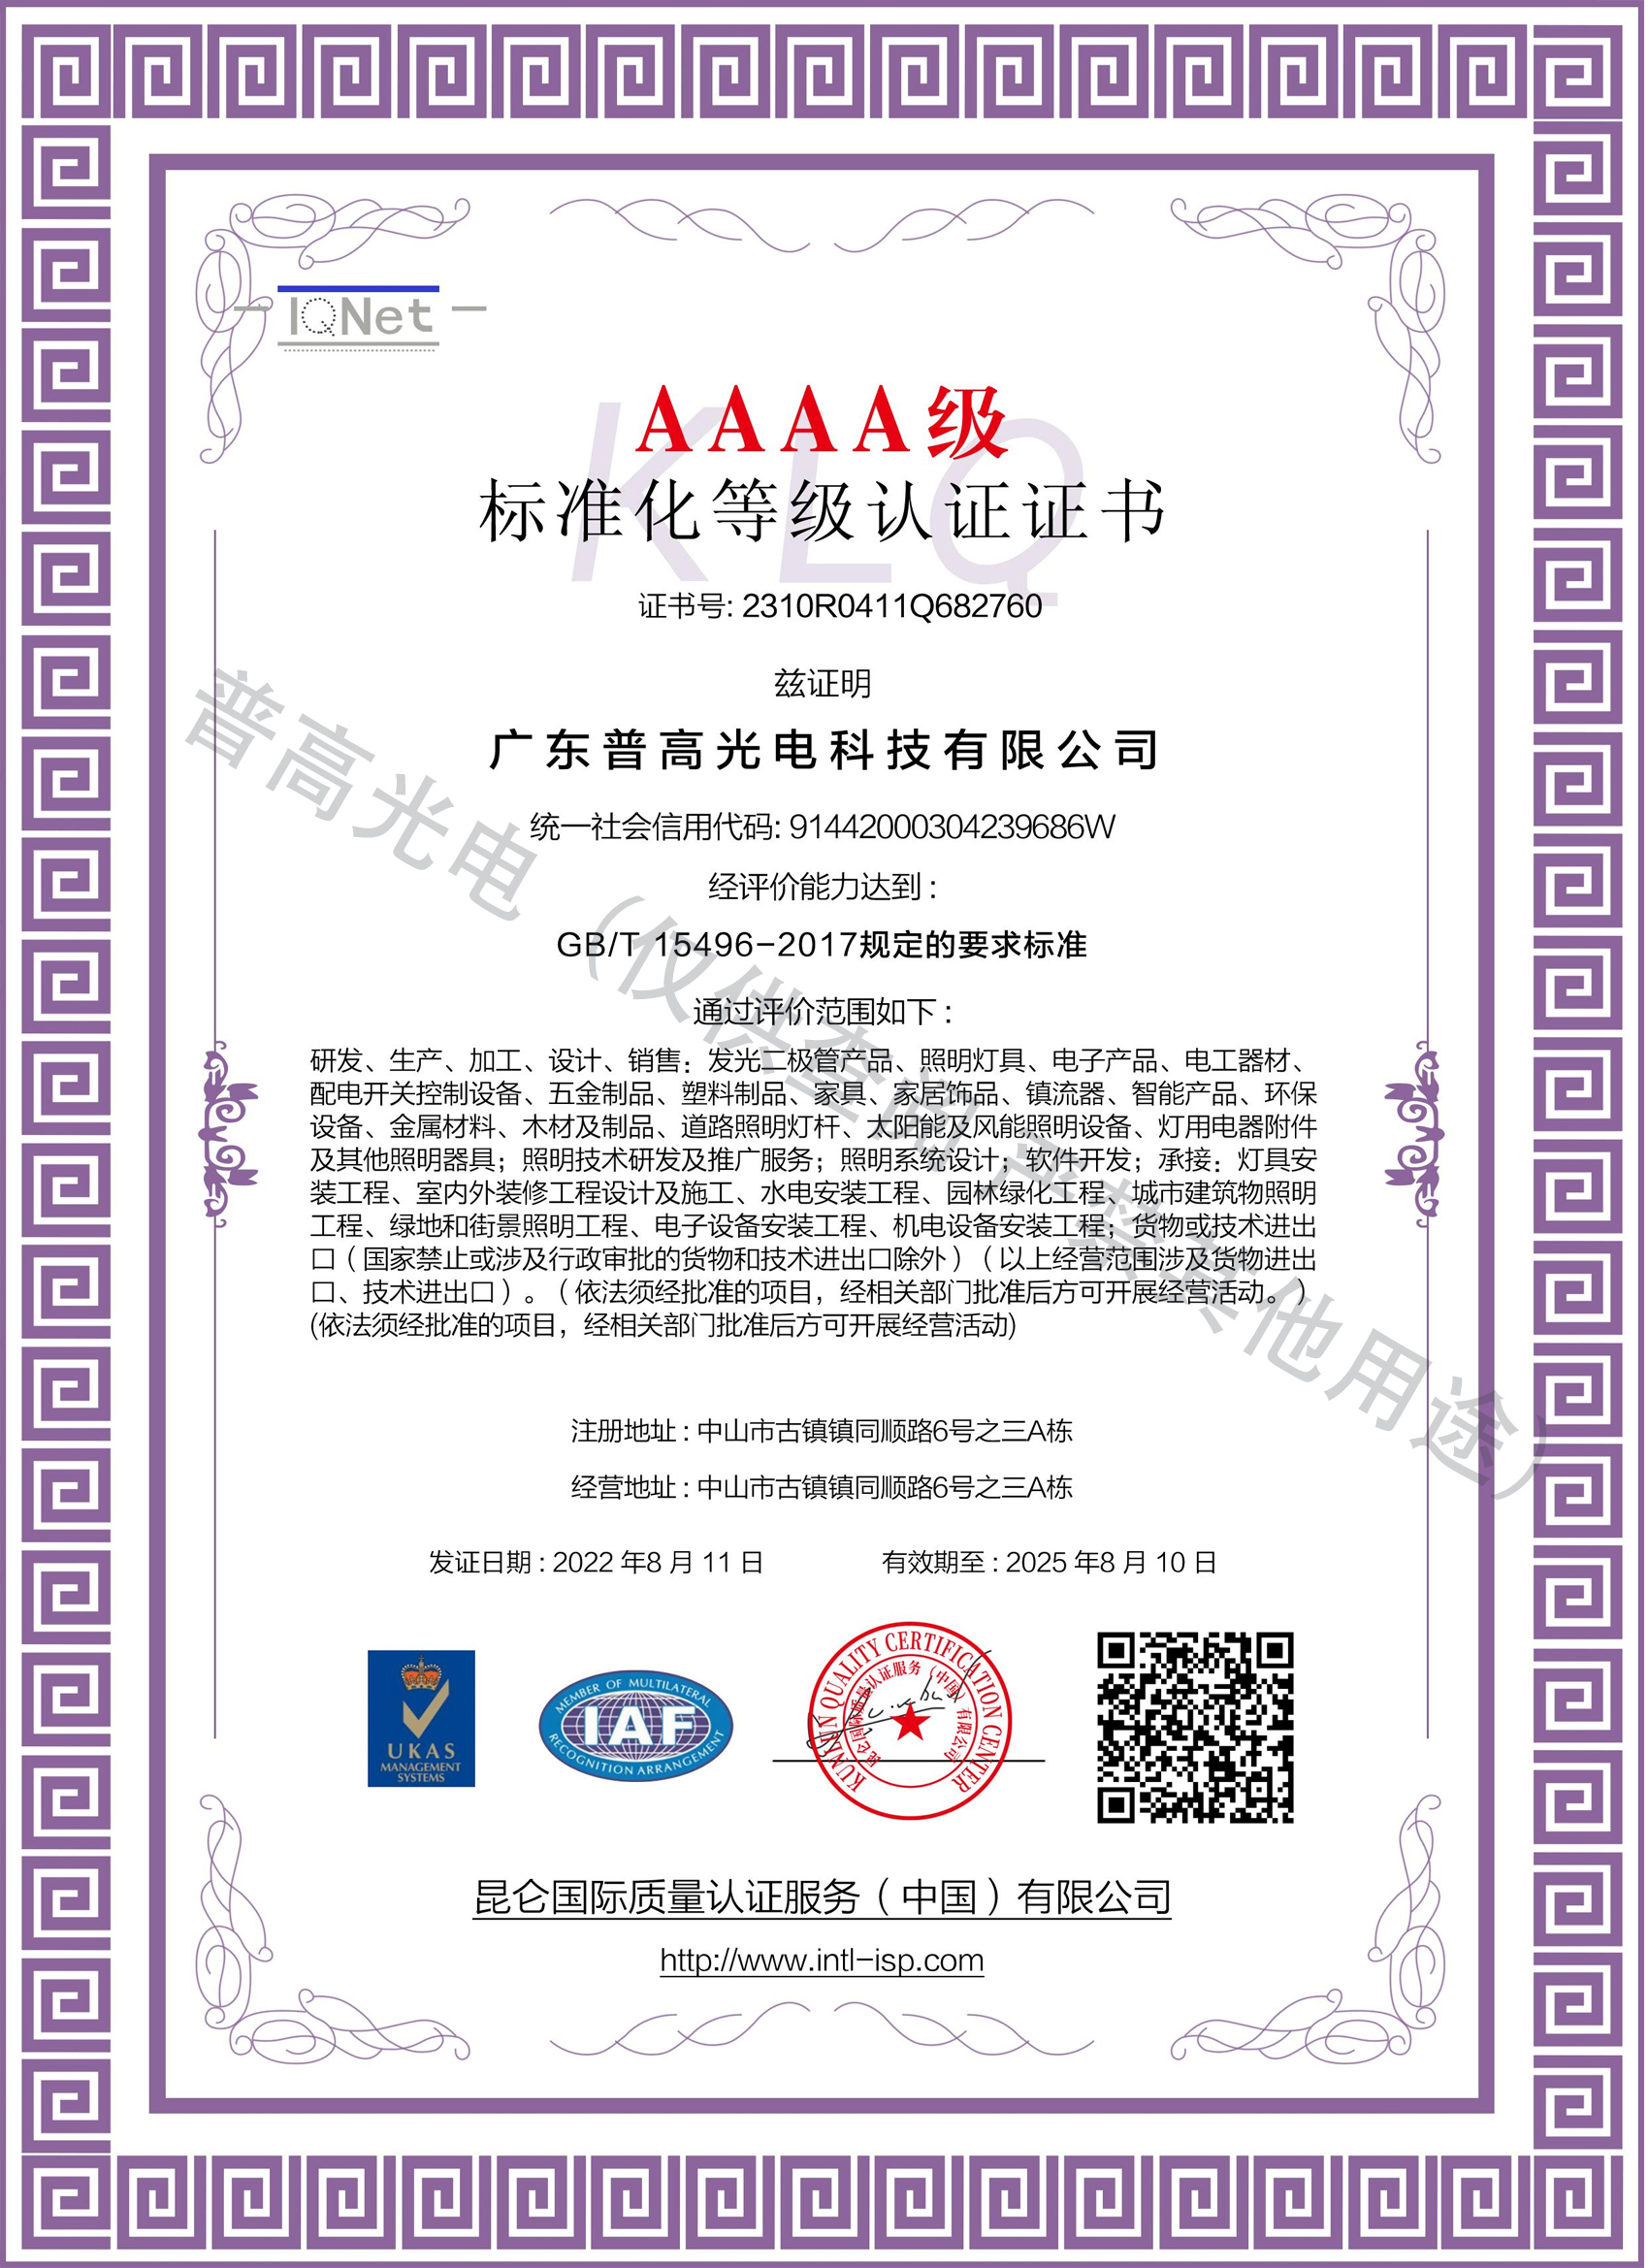 AAAA级标准化等级认证证书